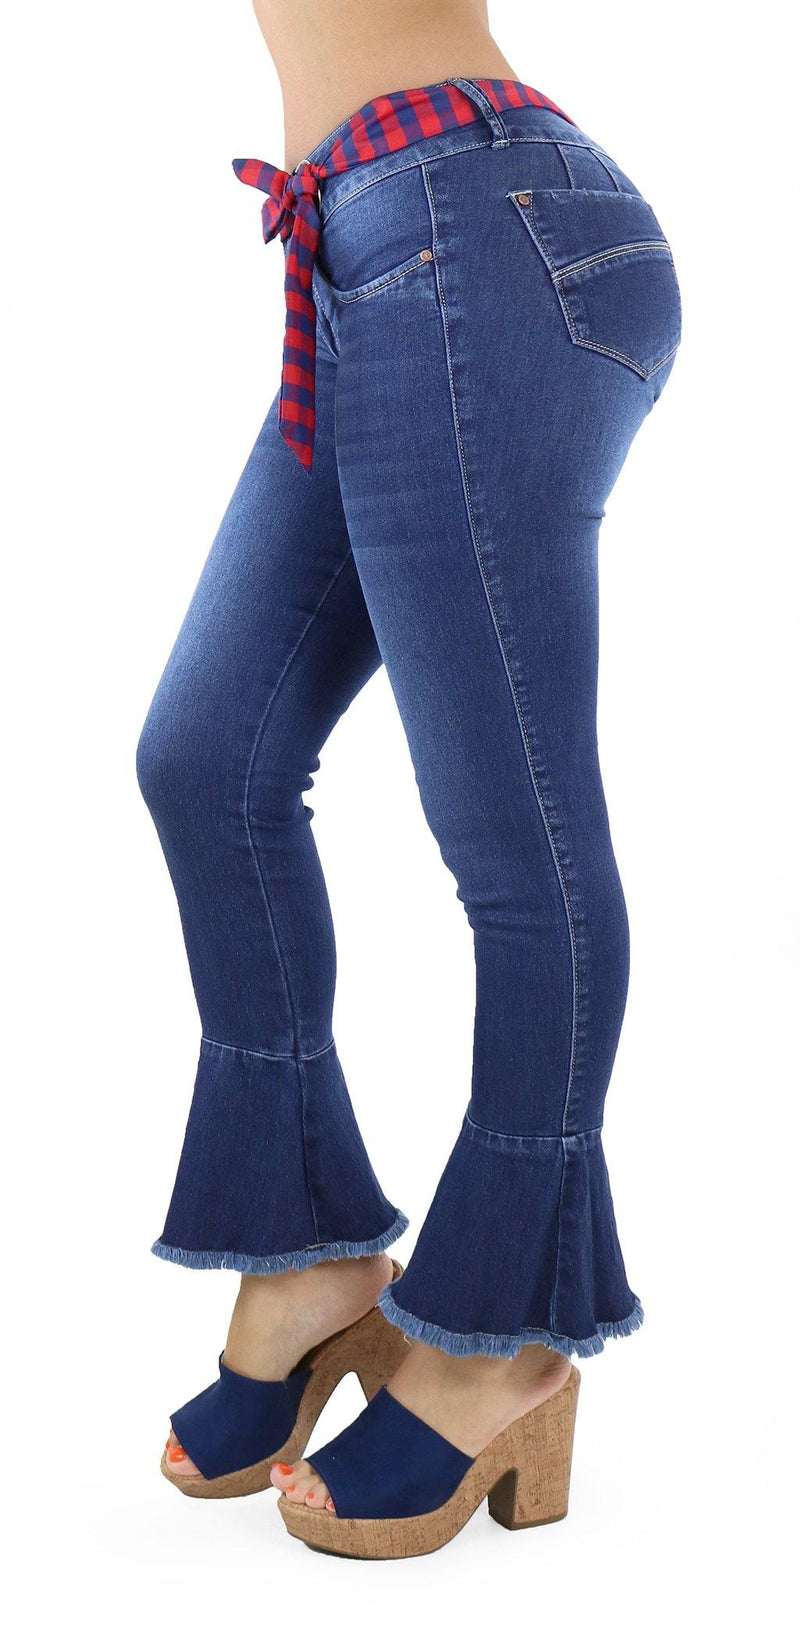 1115 Scarcha Women Skinny Jean